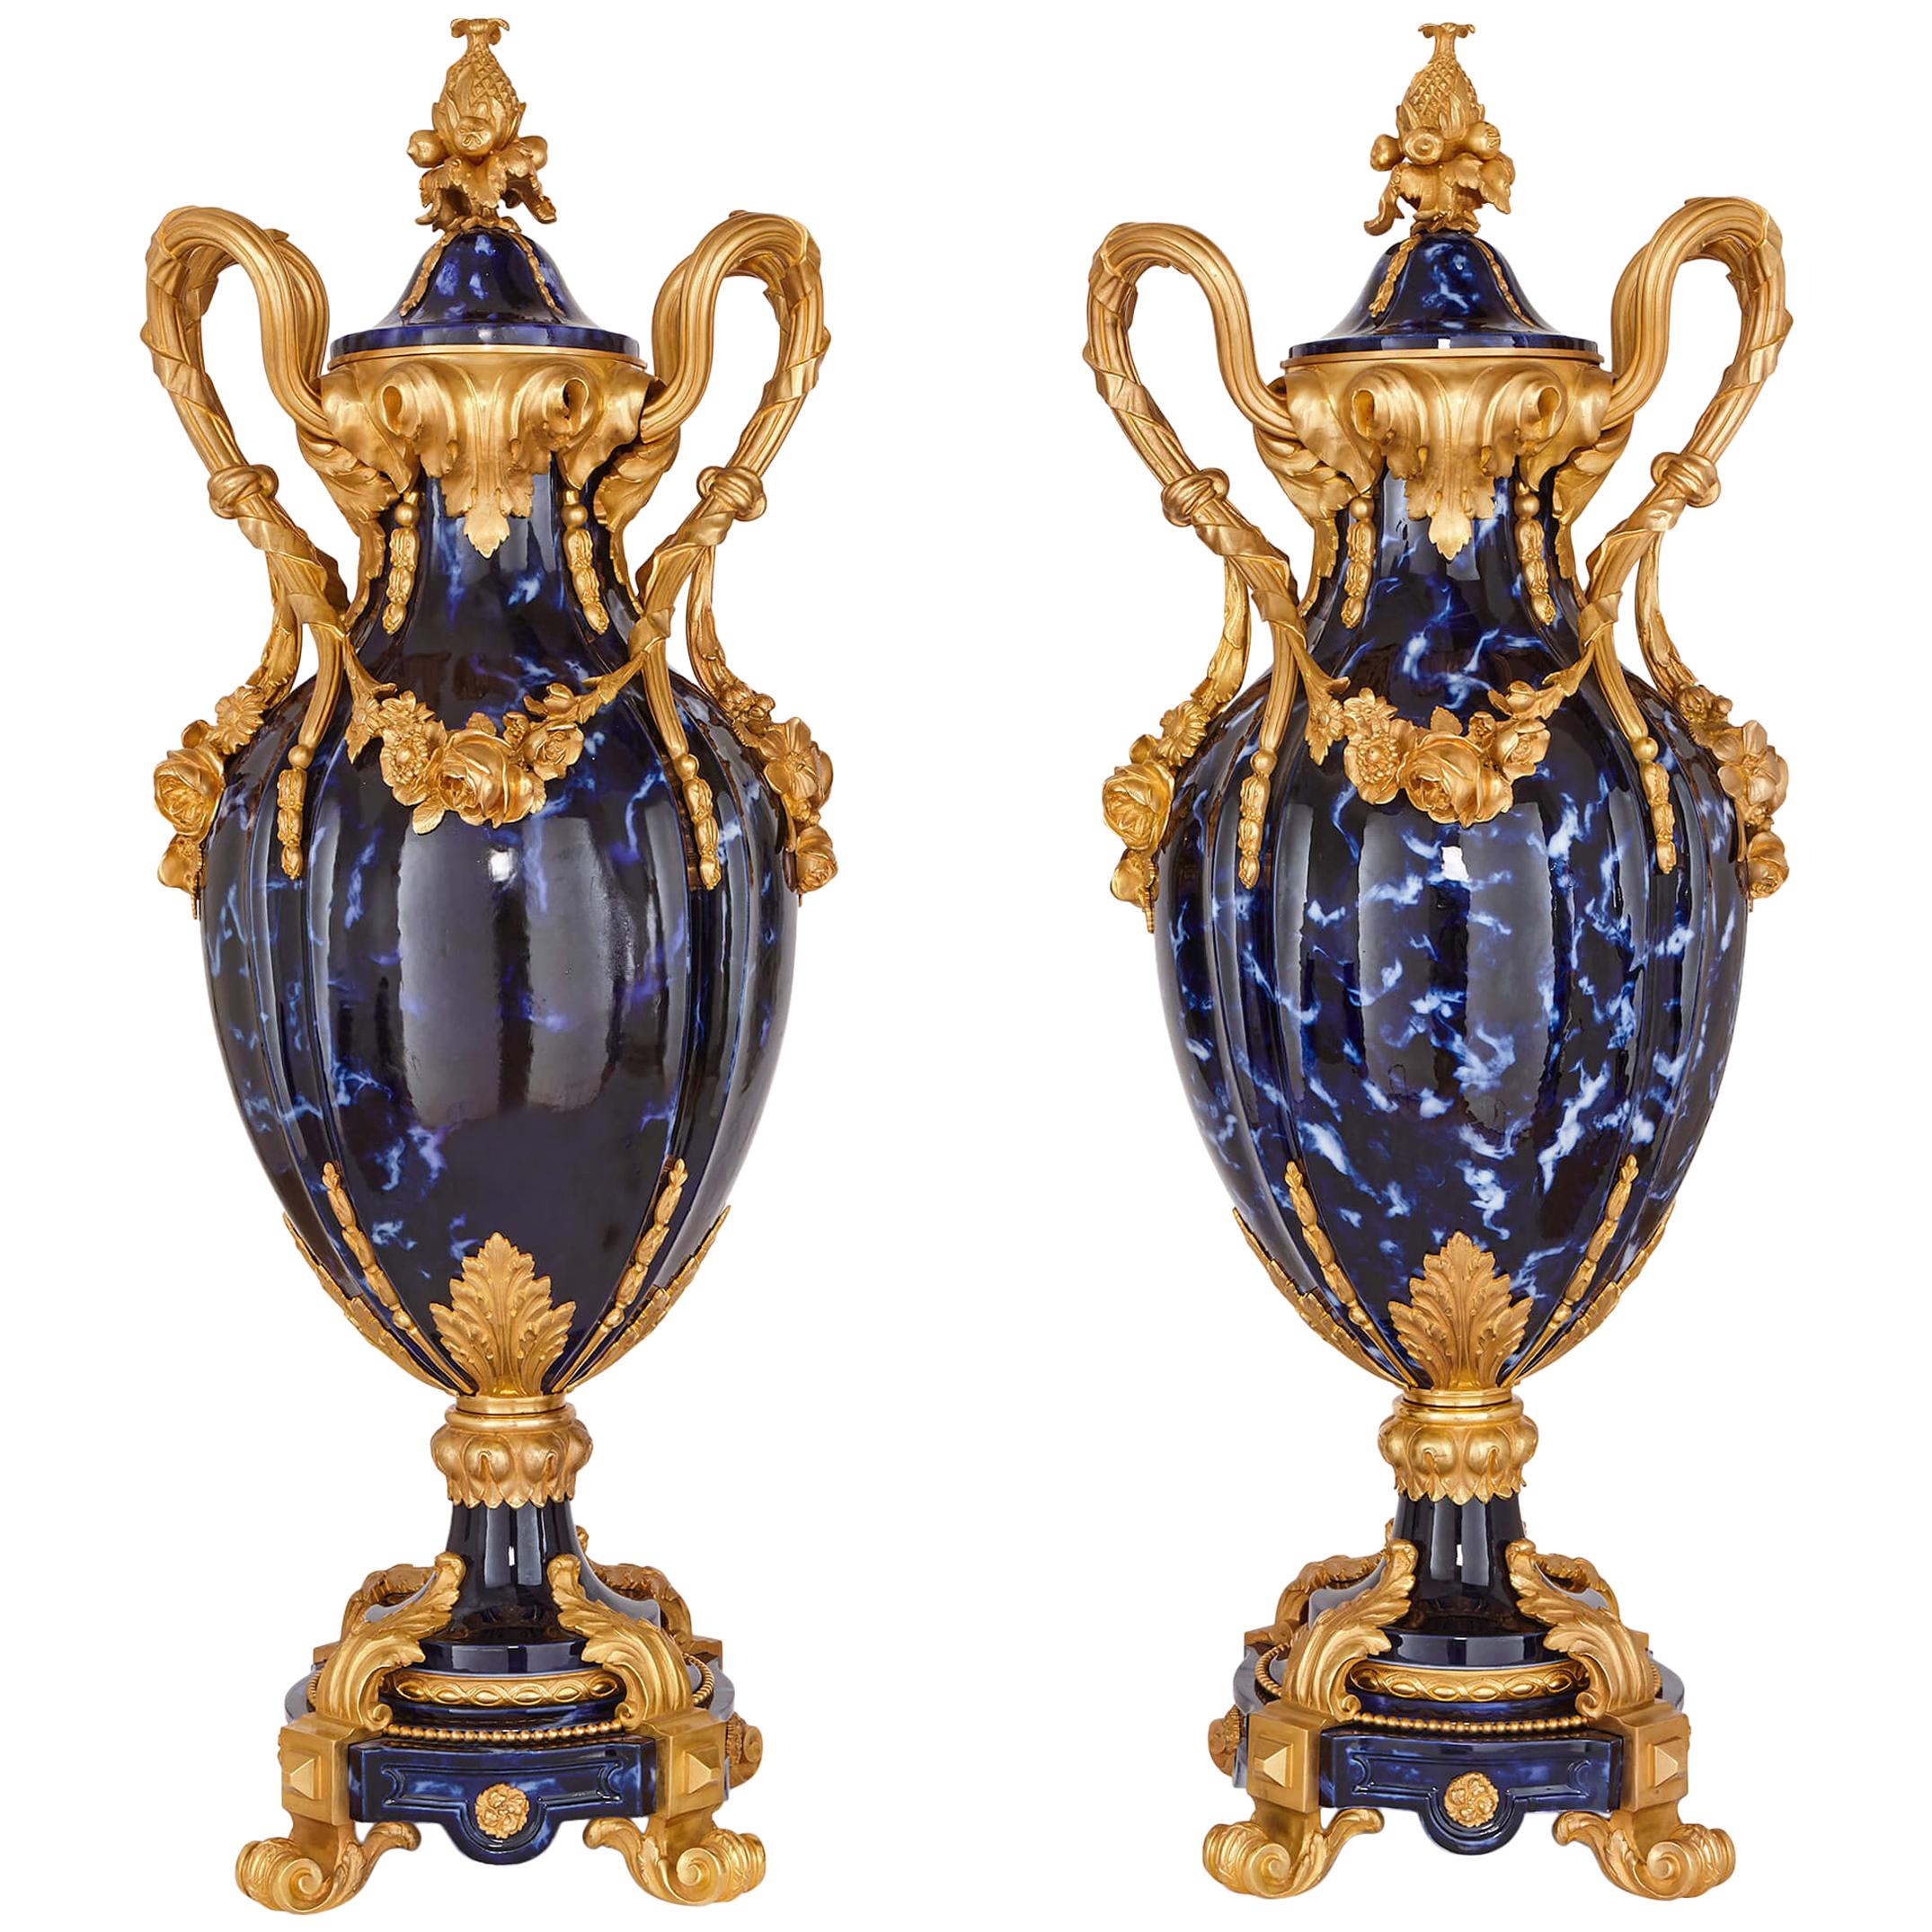 Gran pareja de jarrones de bronce dorado y cerámica azul de estilo rococó